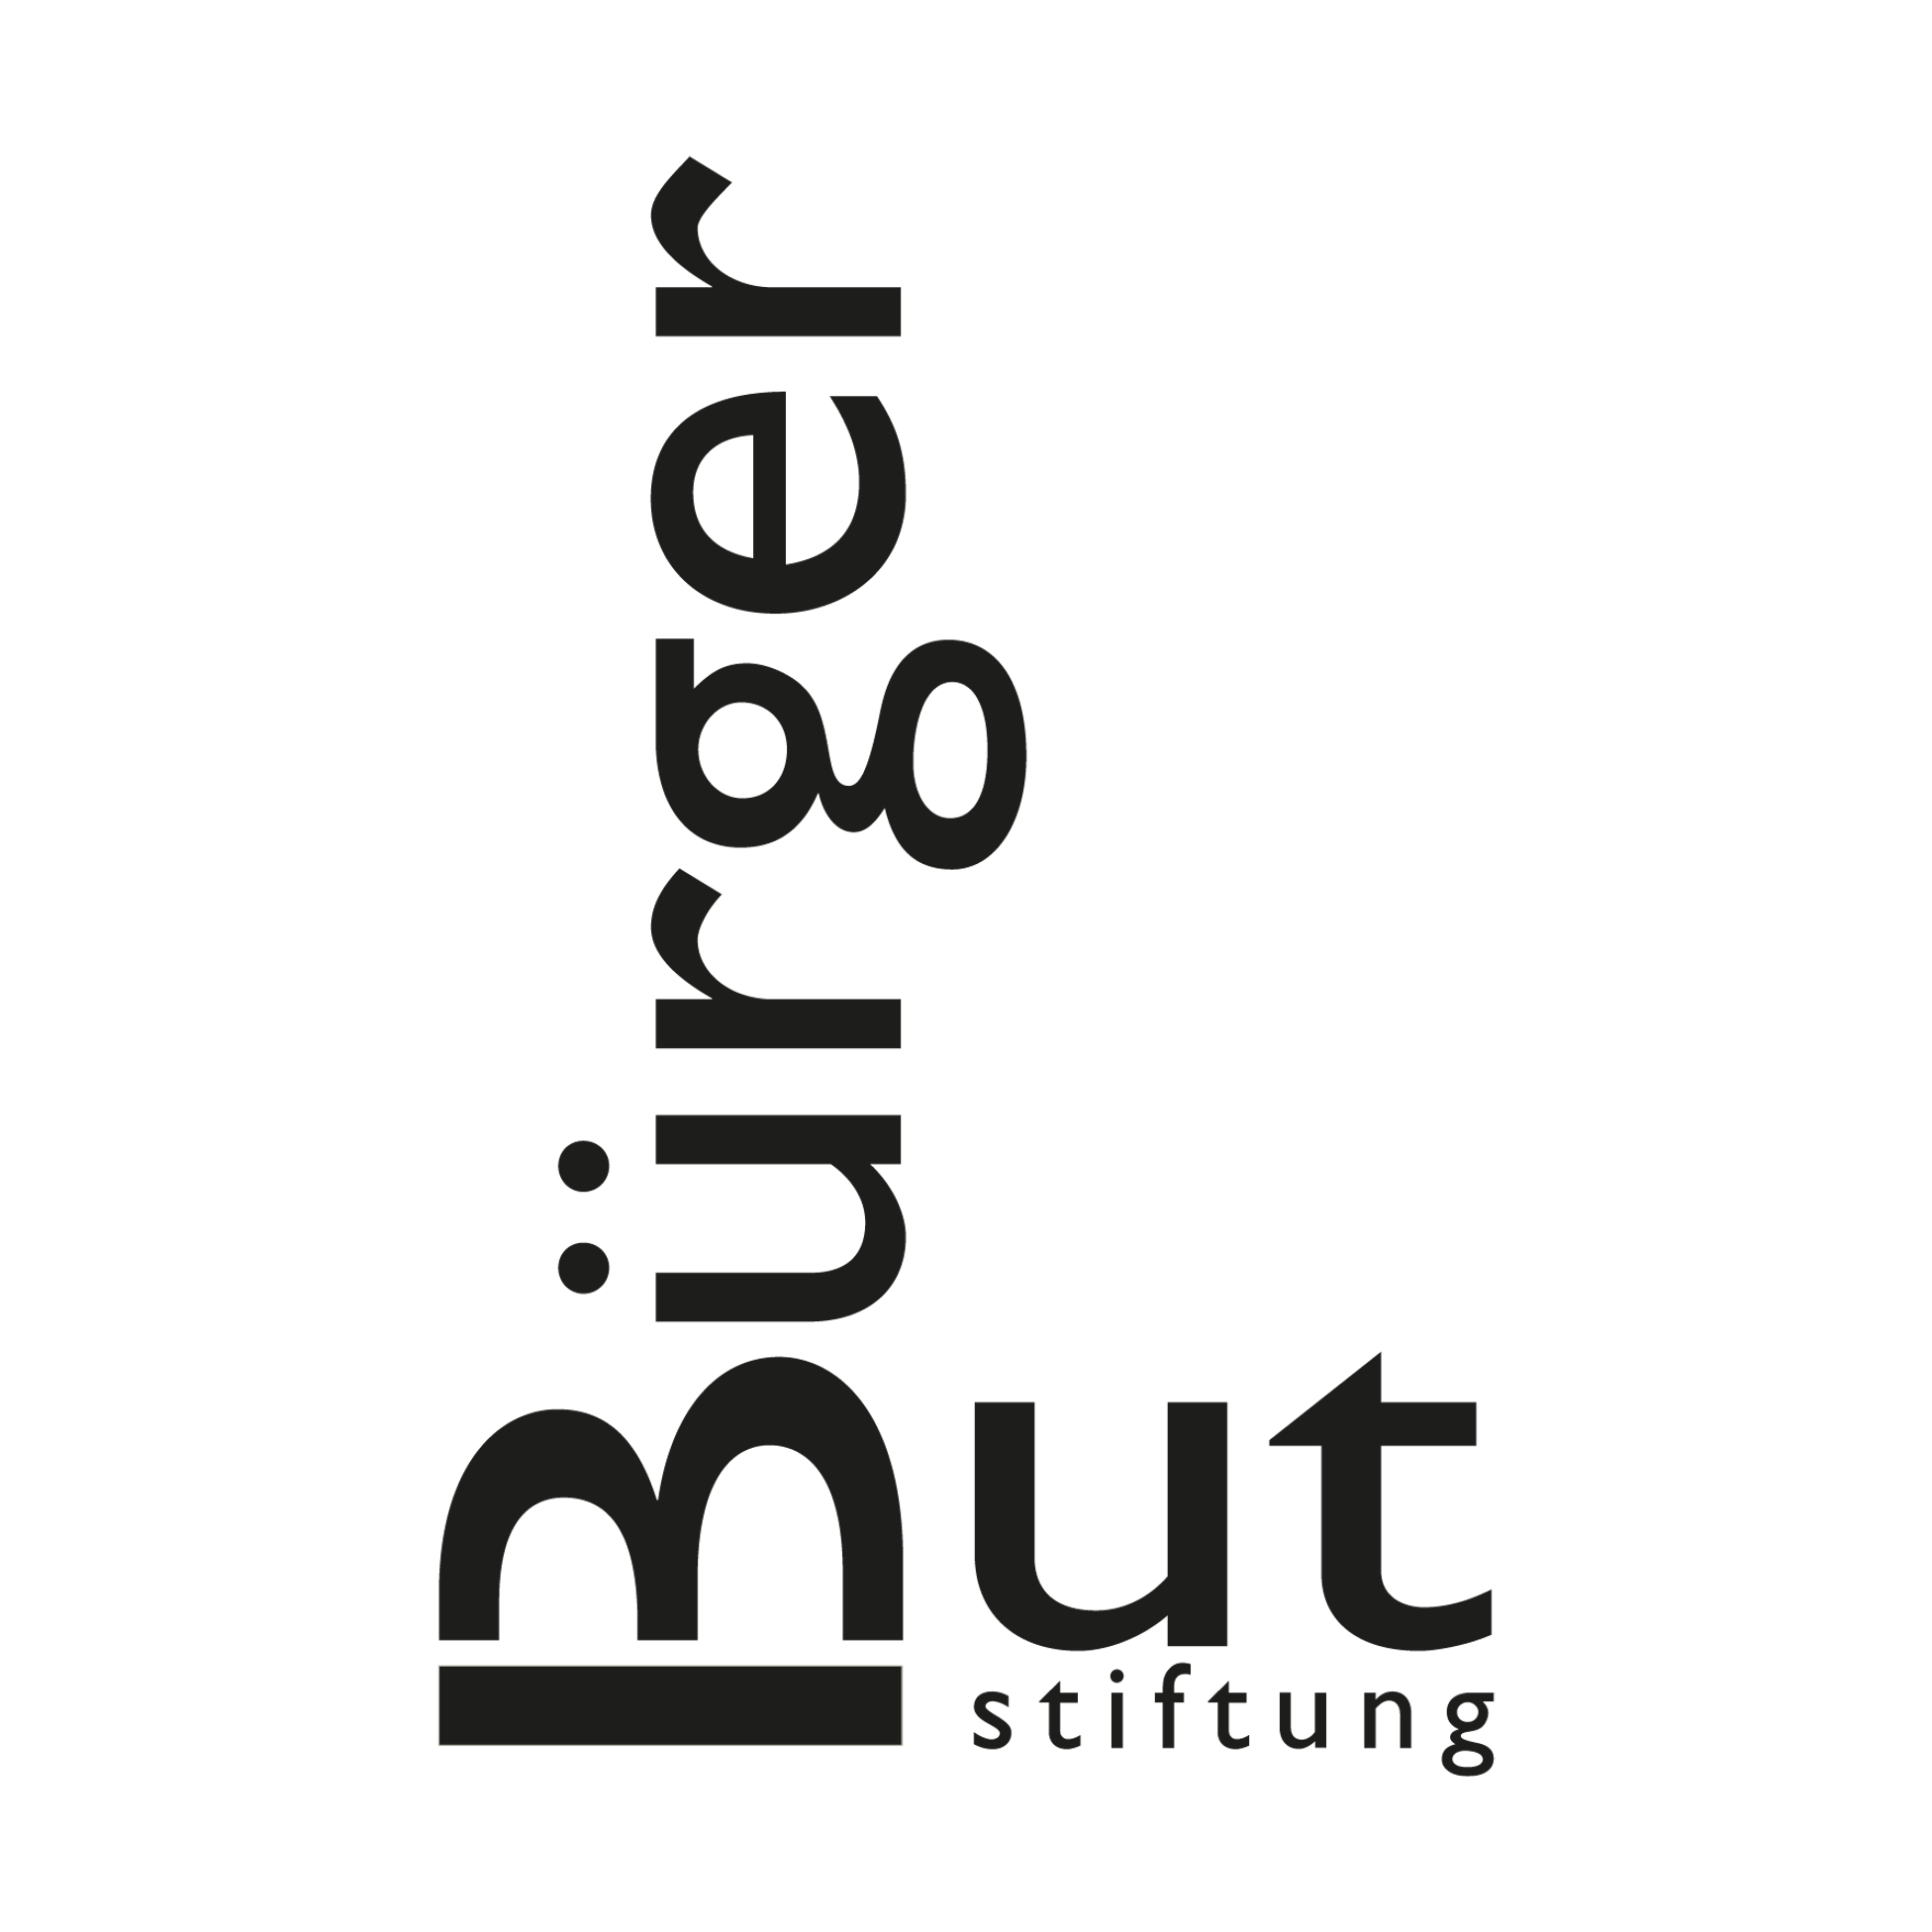 Stiftung Bürgermut